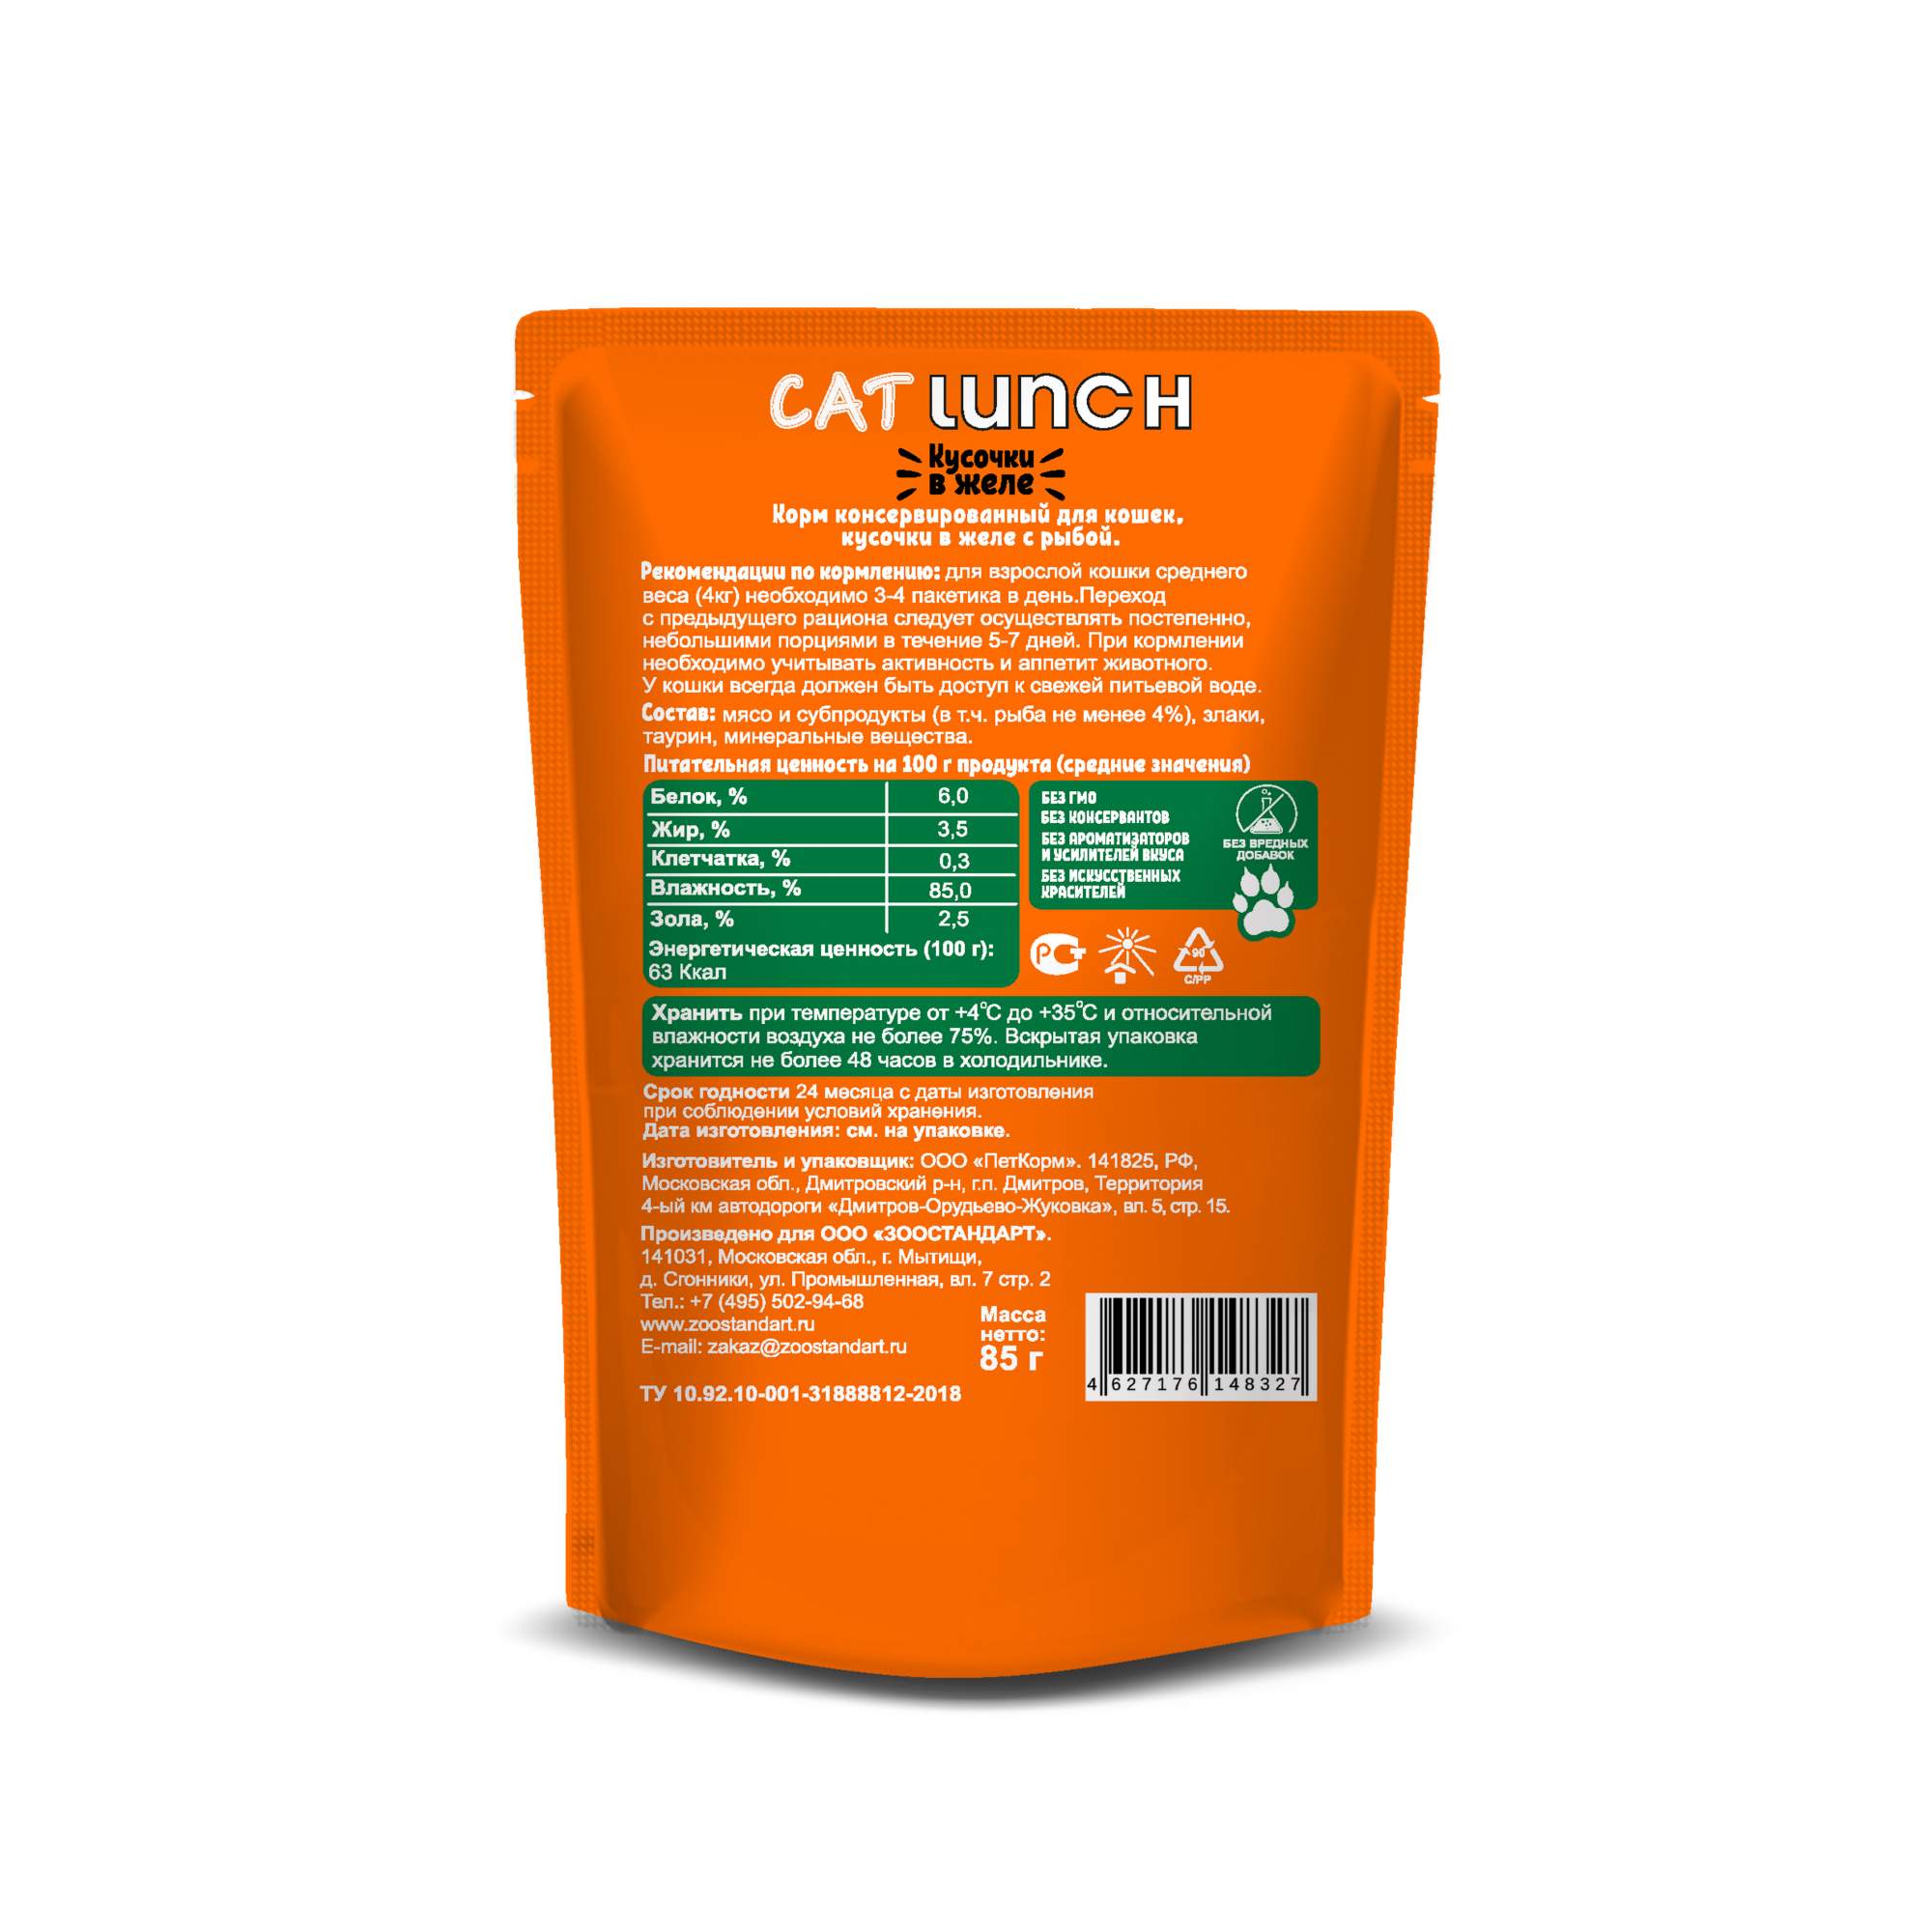 Влажный корм для кошек Cat Lunch, кусочки в желе с рыбой, 24шт по 85г